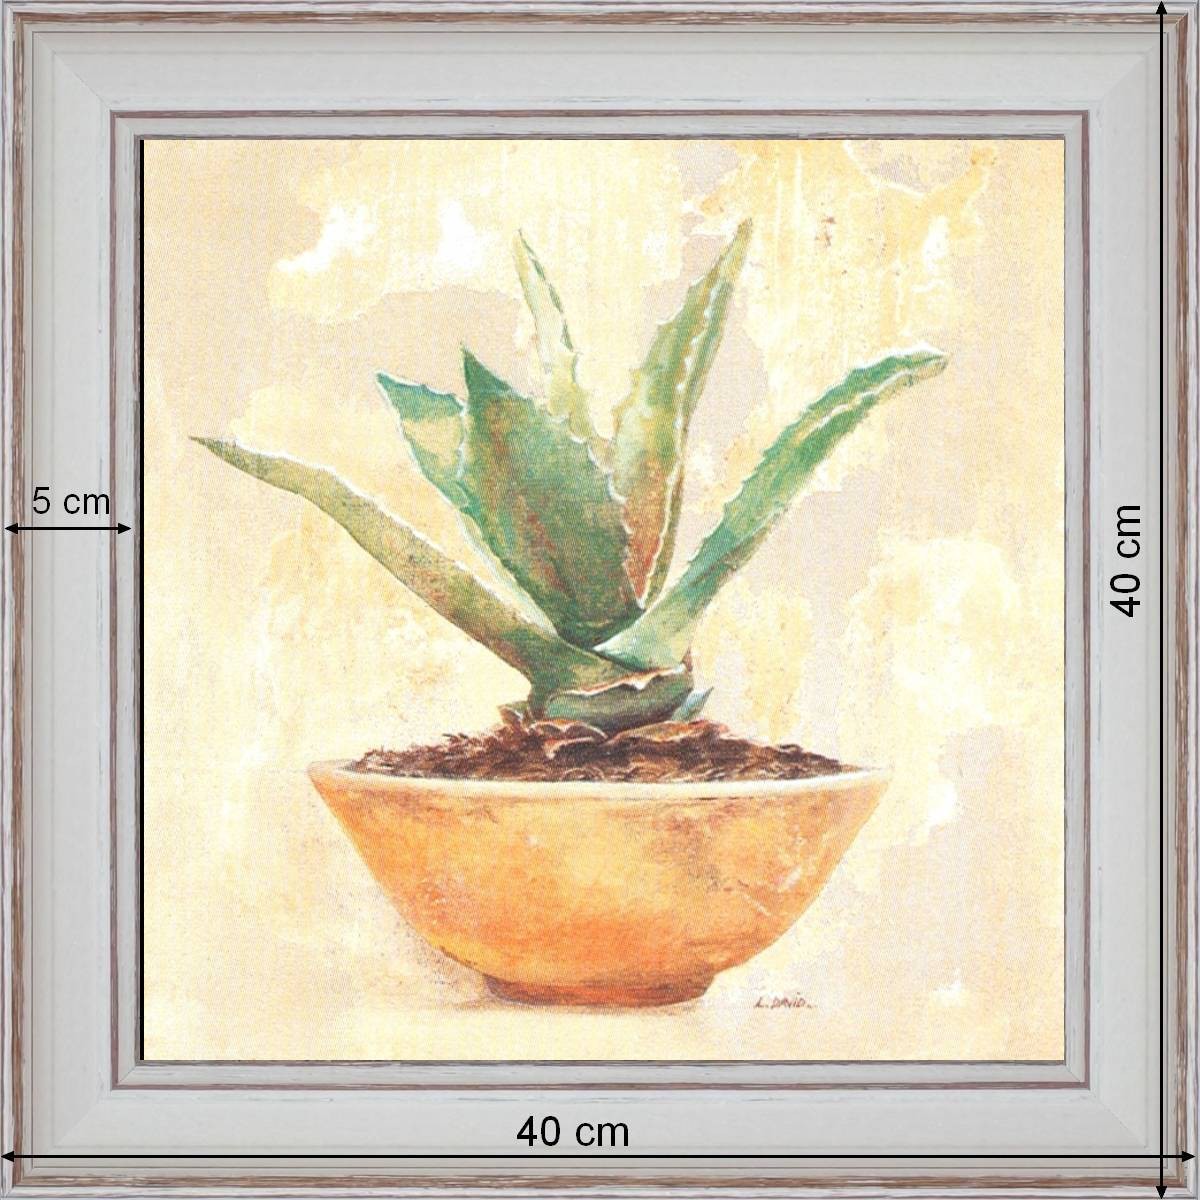 Aloe - dimensions 40 x 40cm - White